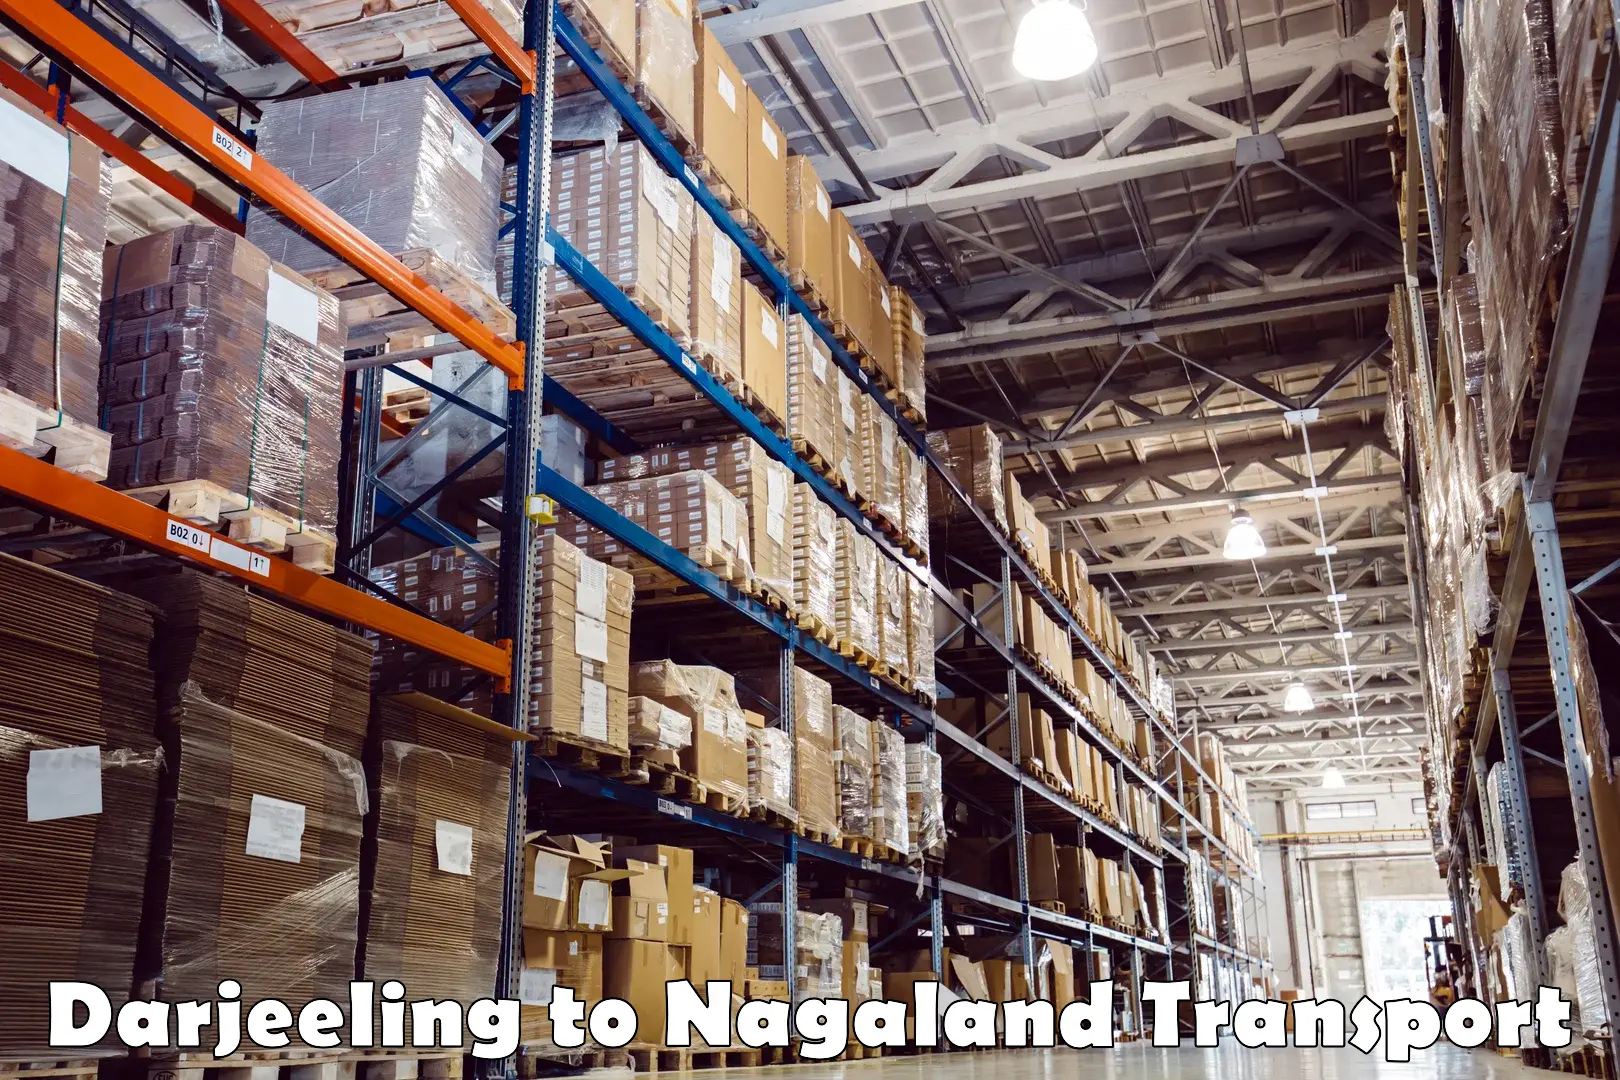 Online transport service Darjeeling to NIT Nagaland